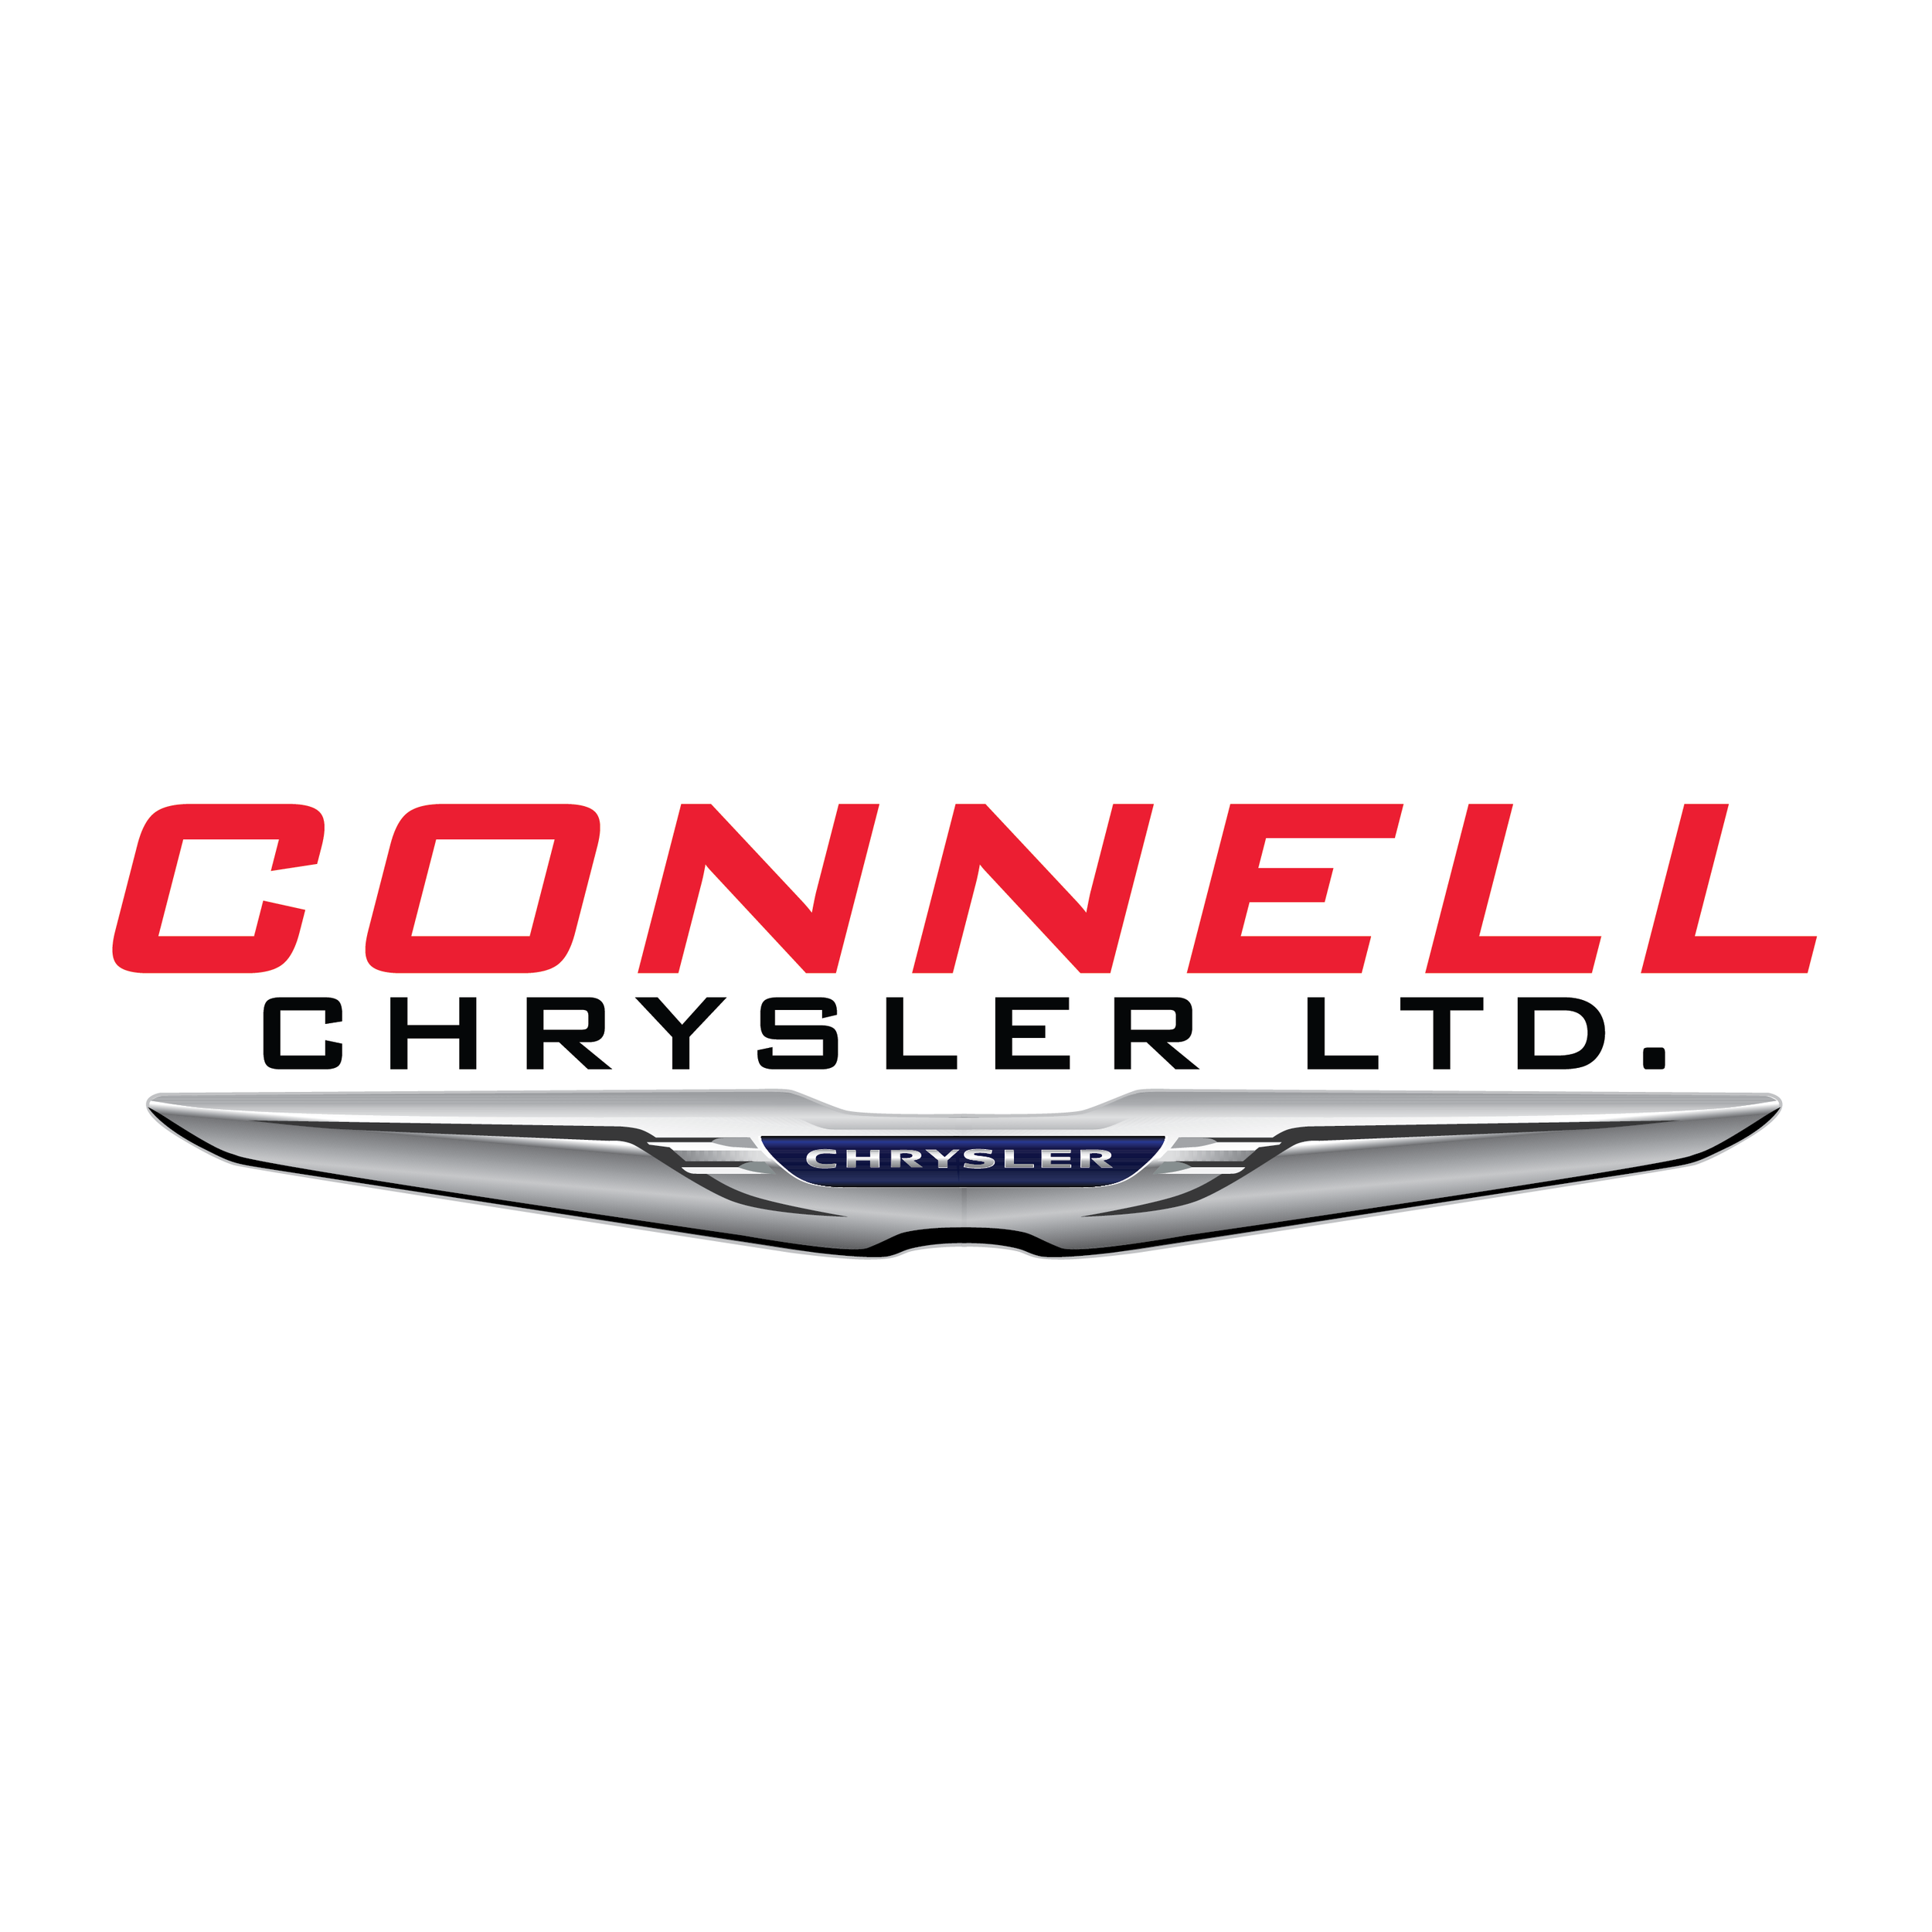 Connell Chrysler Ltd.